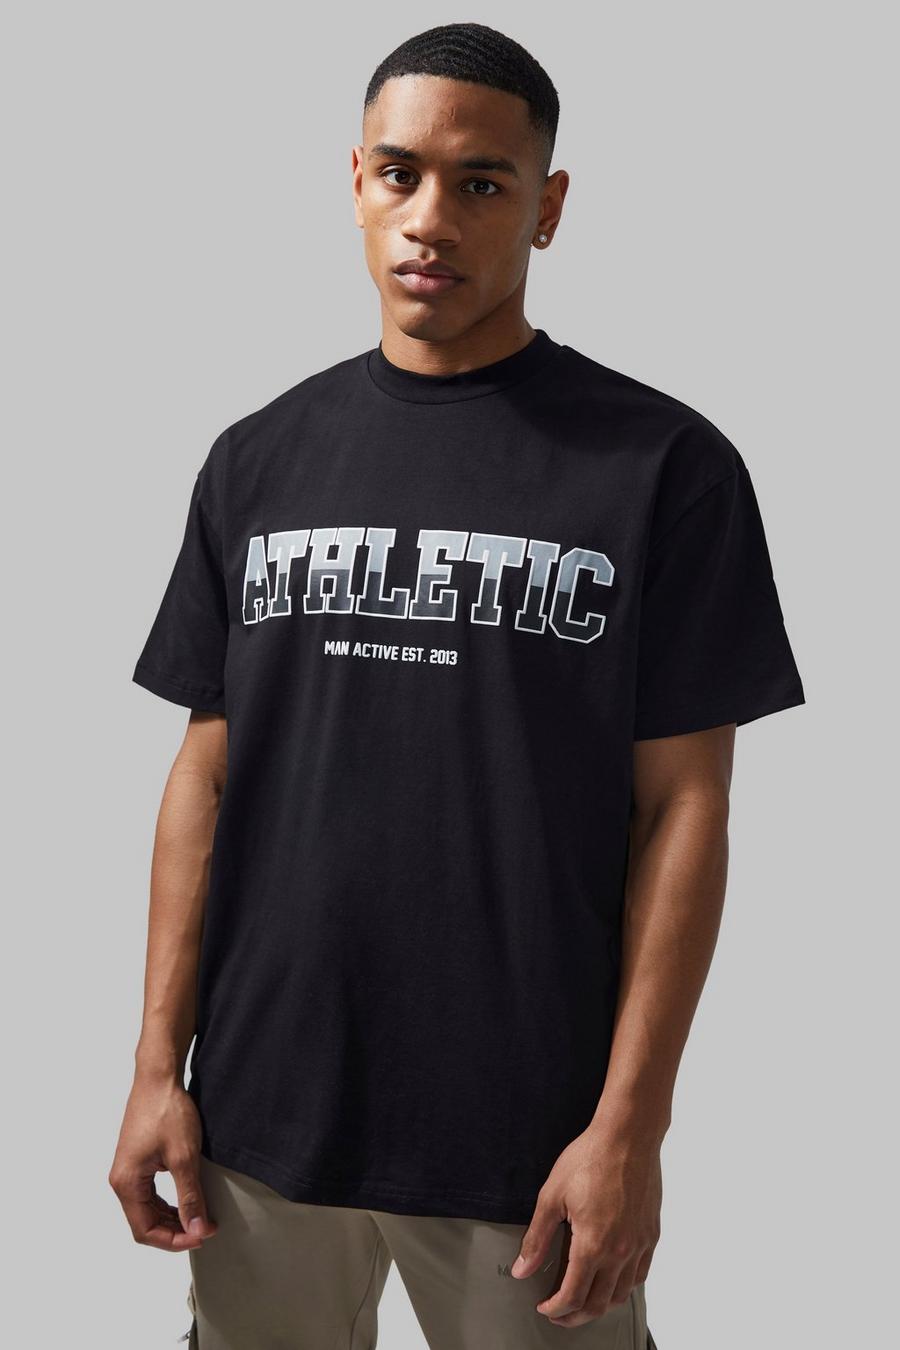 Black negro Man Active Gym Oversized Athletic T-shirt